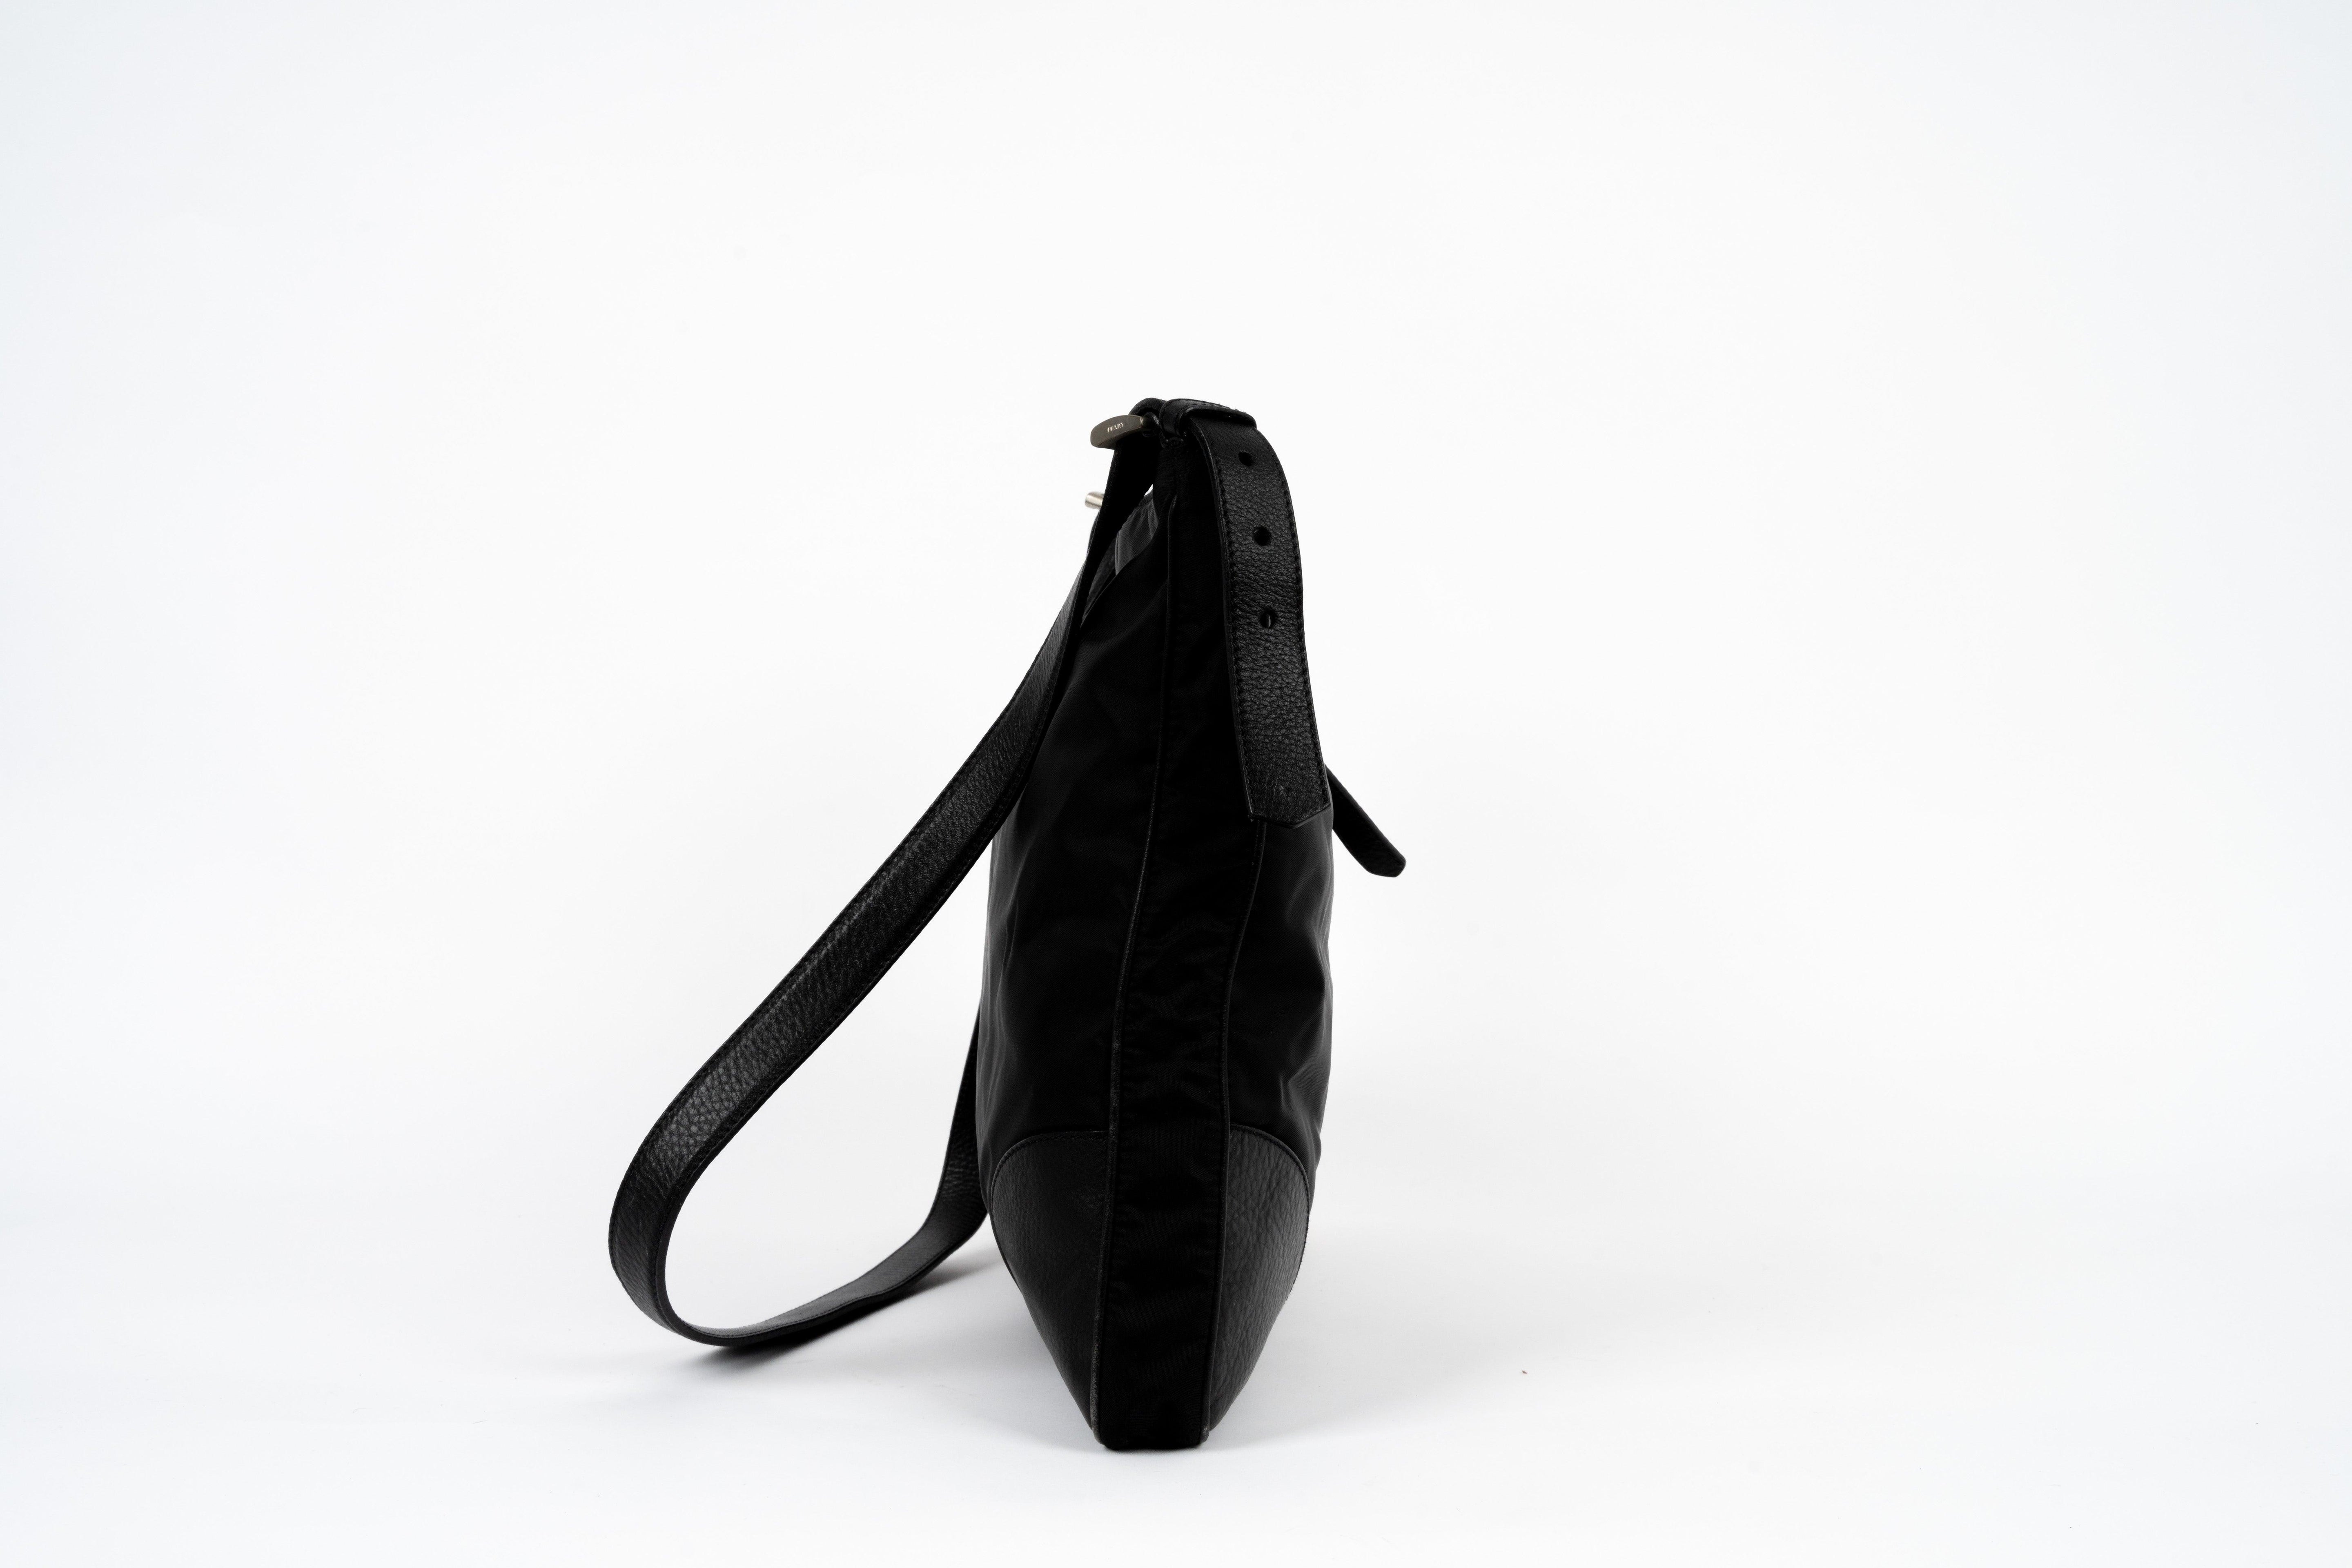 Crossbody Black Nylon Bag - Volver